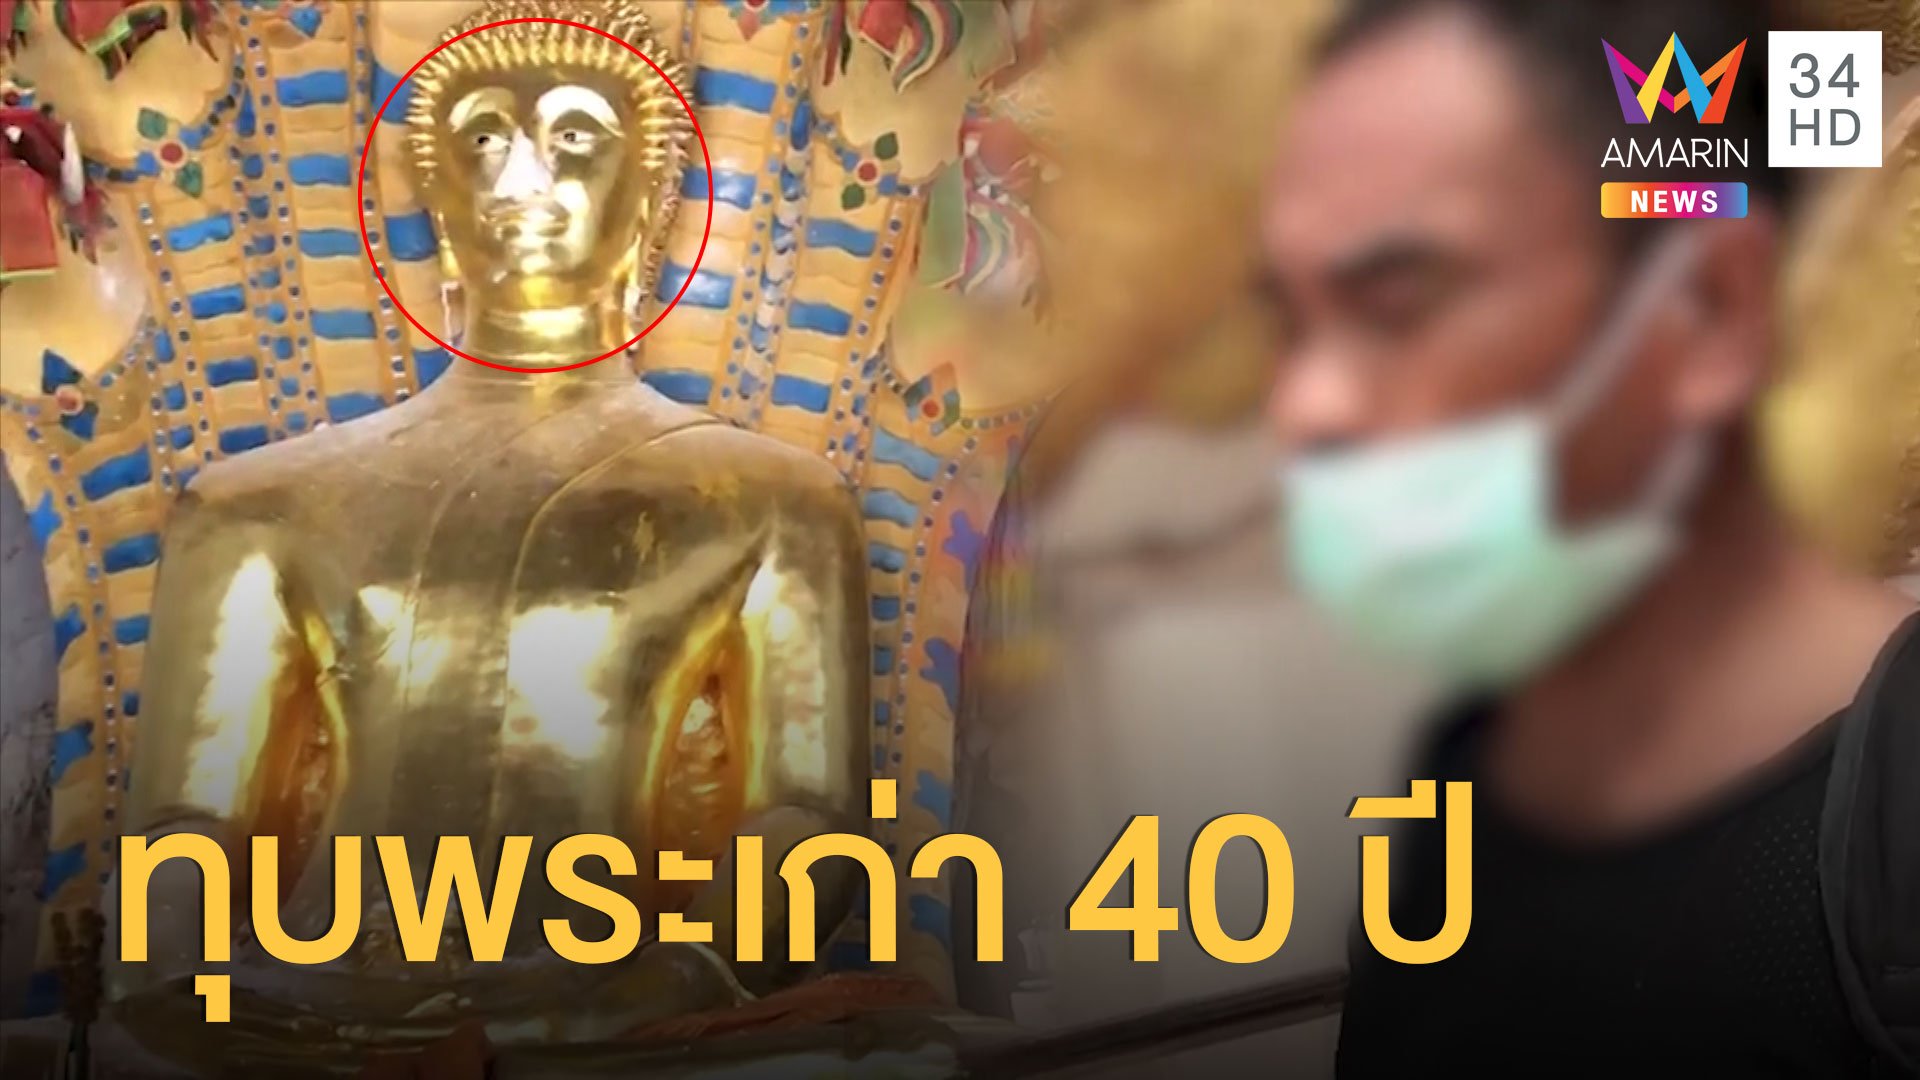 รวบ ลำไย ไหทอง ทุบพระพุทธรูปโบราณ อายุ 40 ปี | ข่าวอรุณอมรินทร์ | 30 มิ.ย. 63 | AMARIN TVHD34